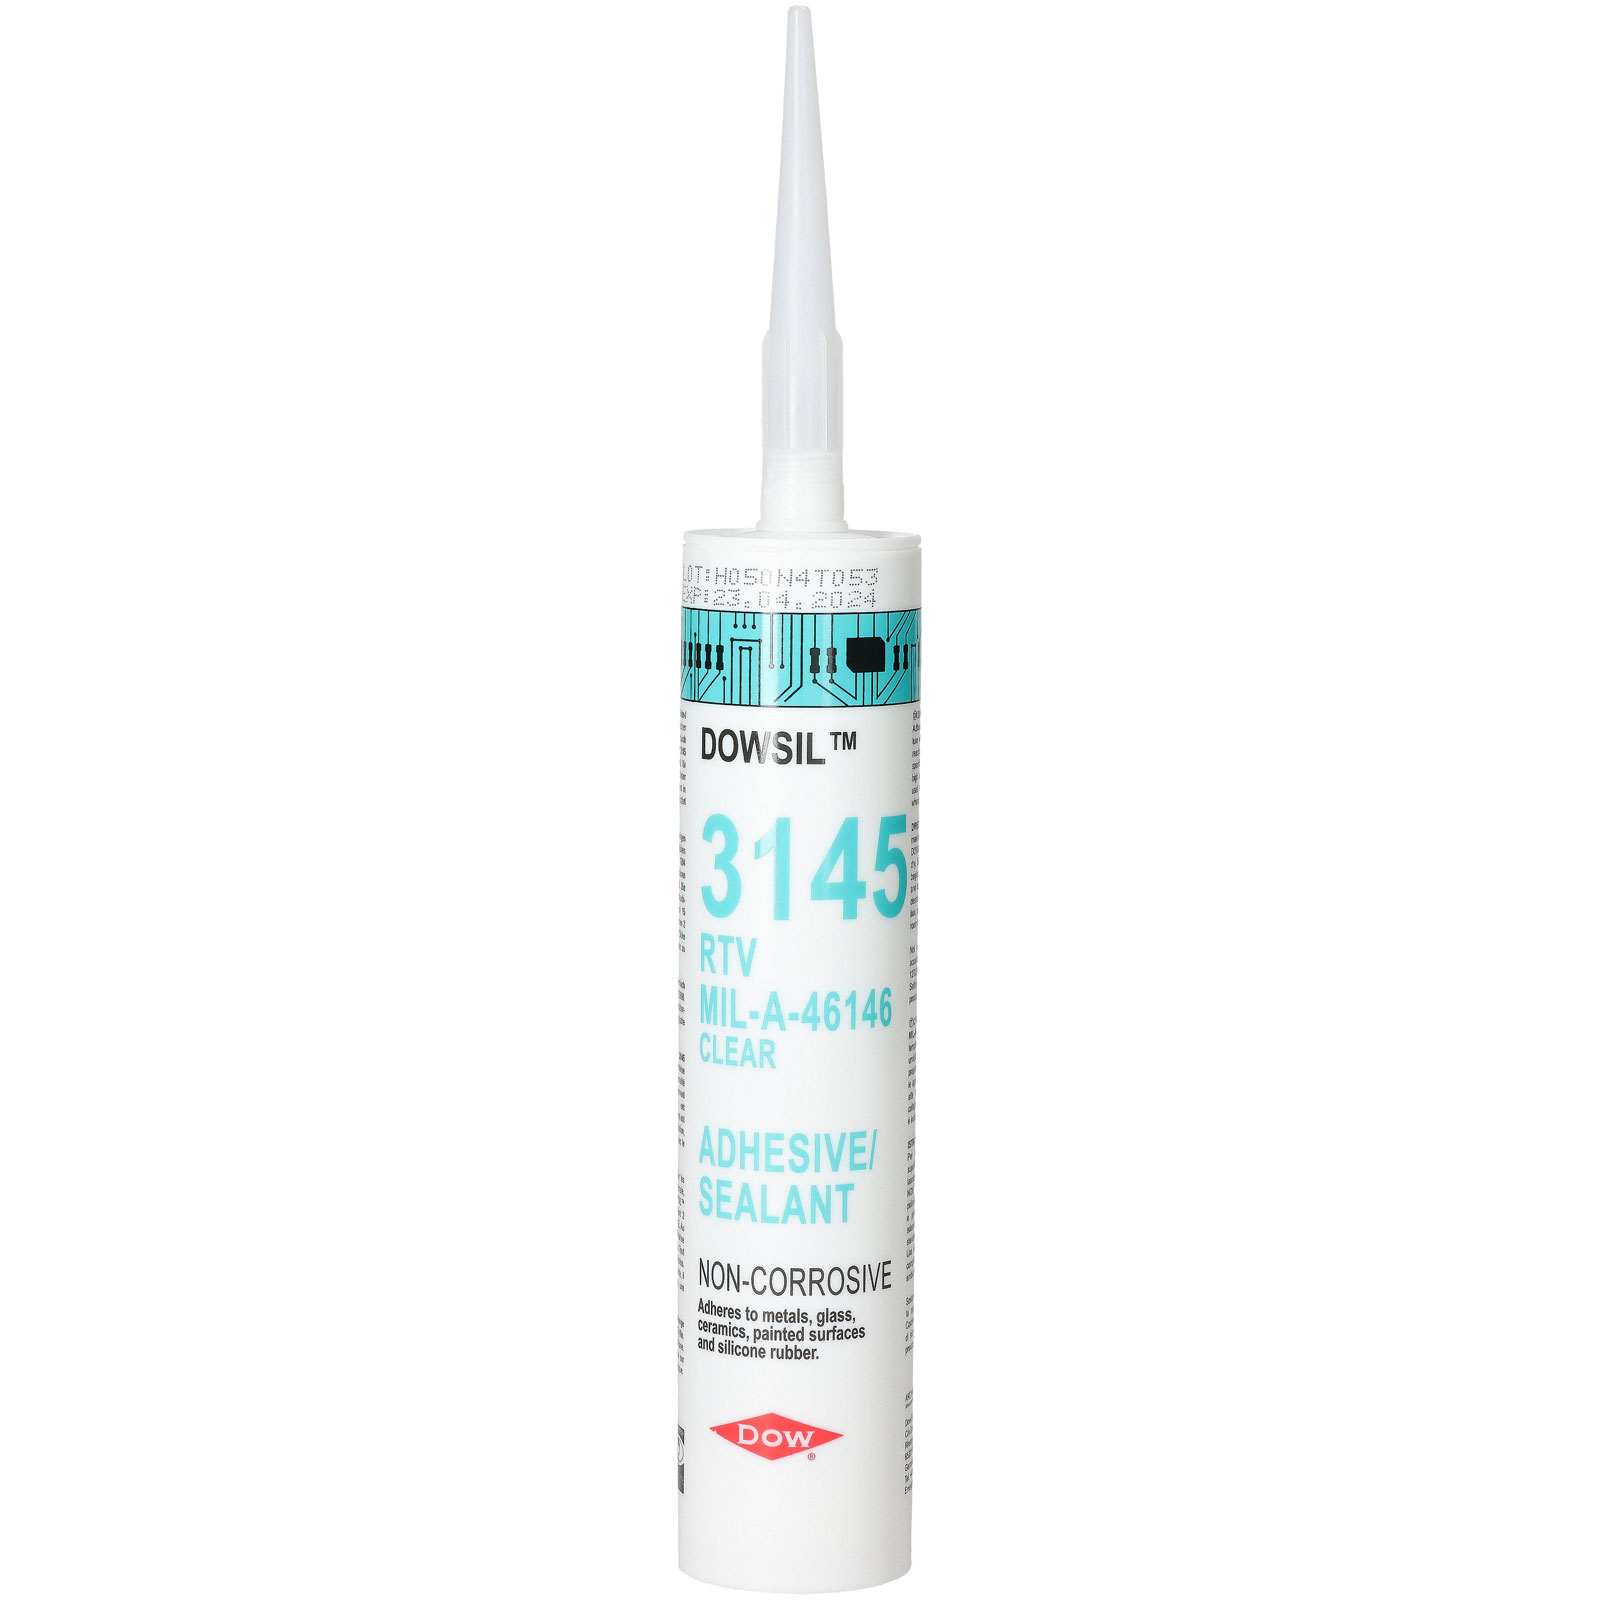 Dow 3145 Adhesive Sealant